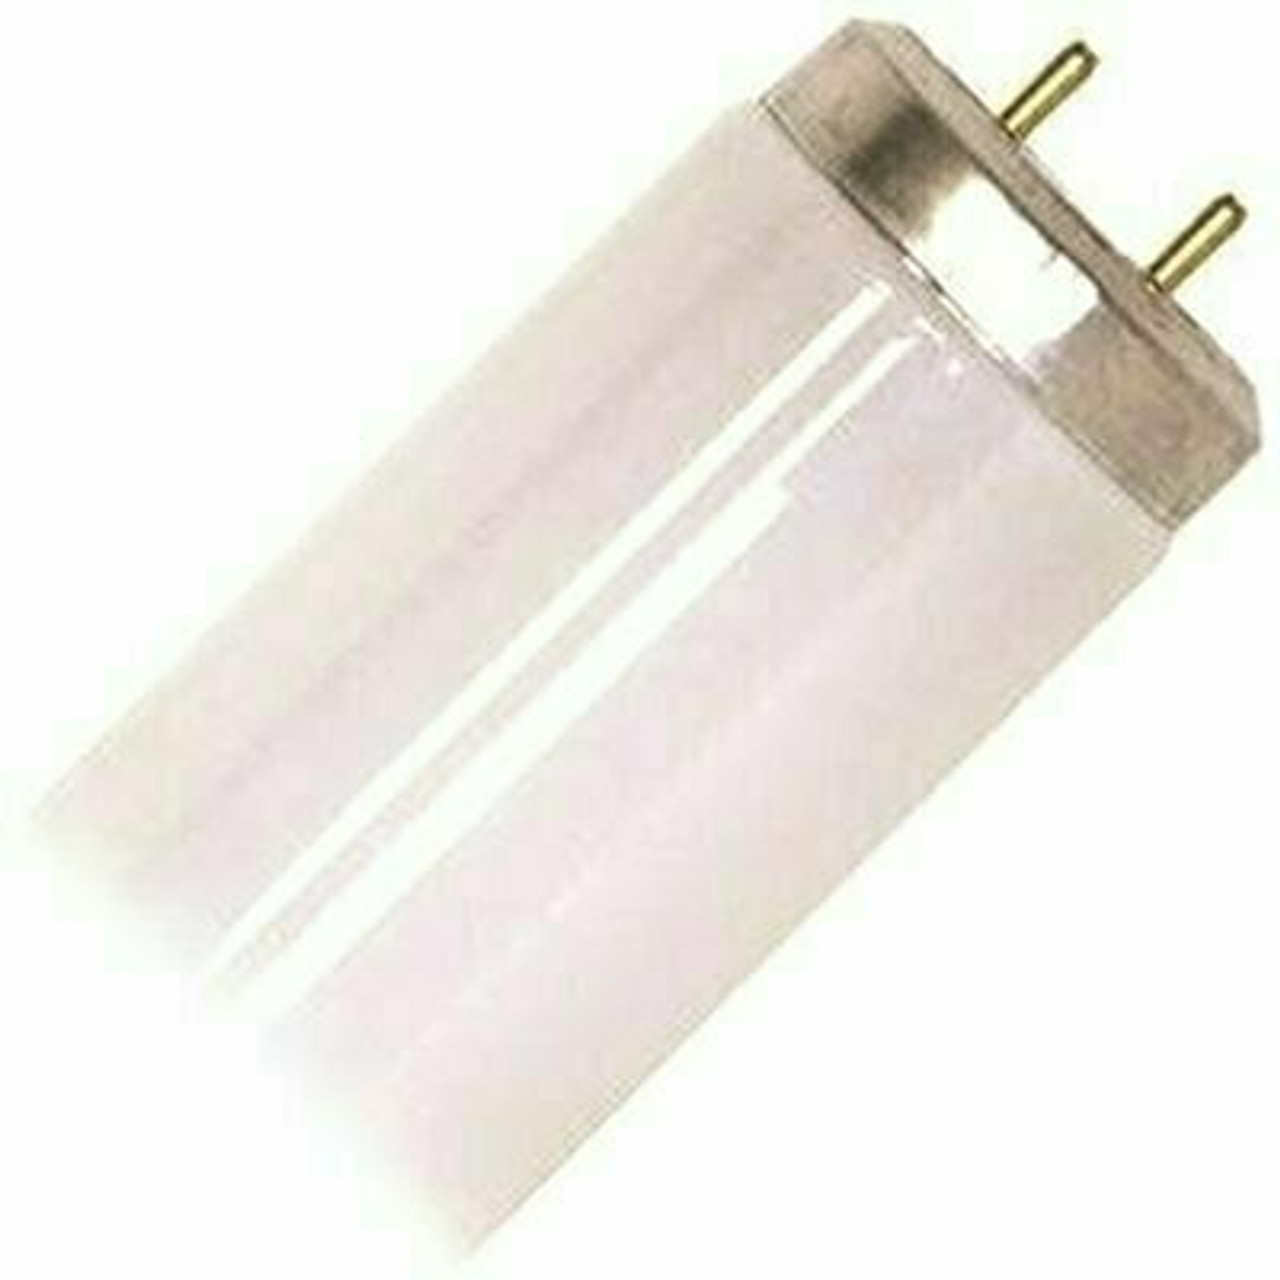 Sylvania 20-Watt 24 In. Preheat Linear T12 Fluorescent Lamp Light Bulb, Cool White (30 Per Case)